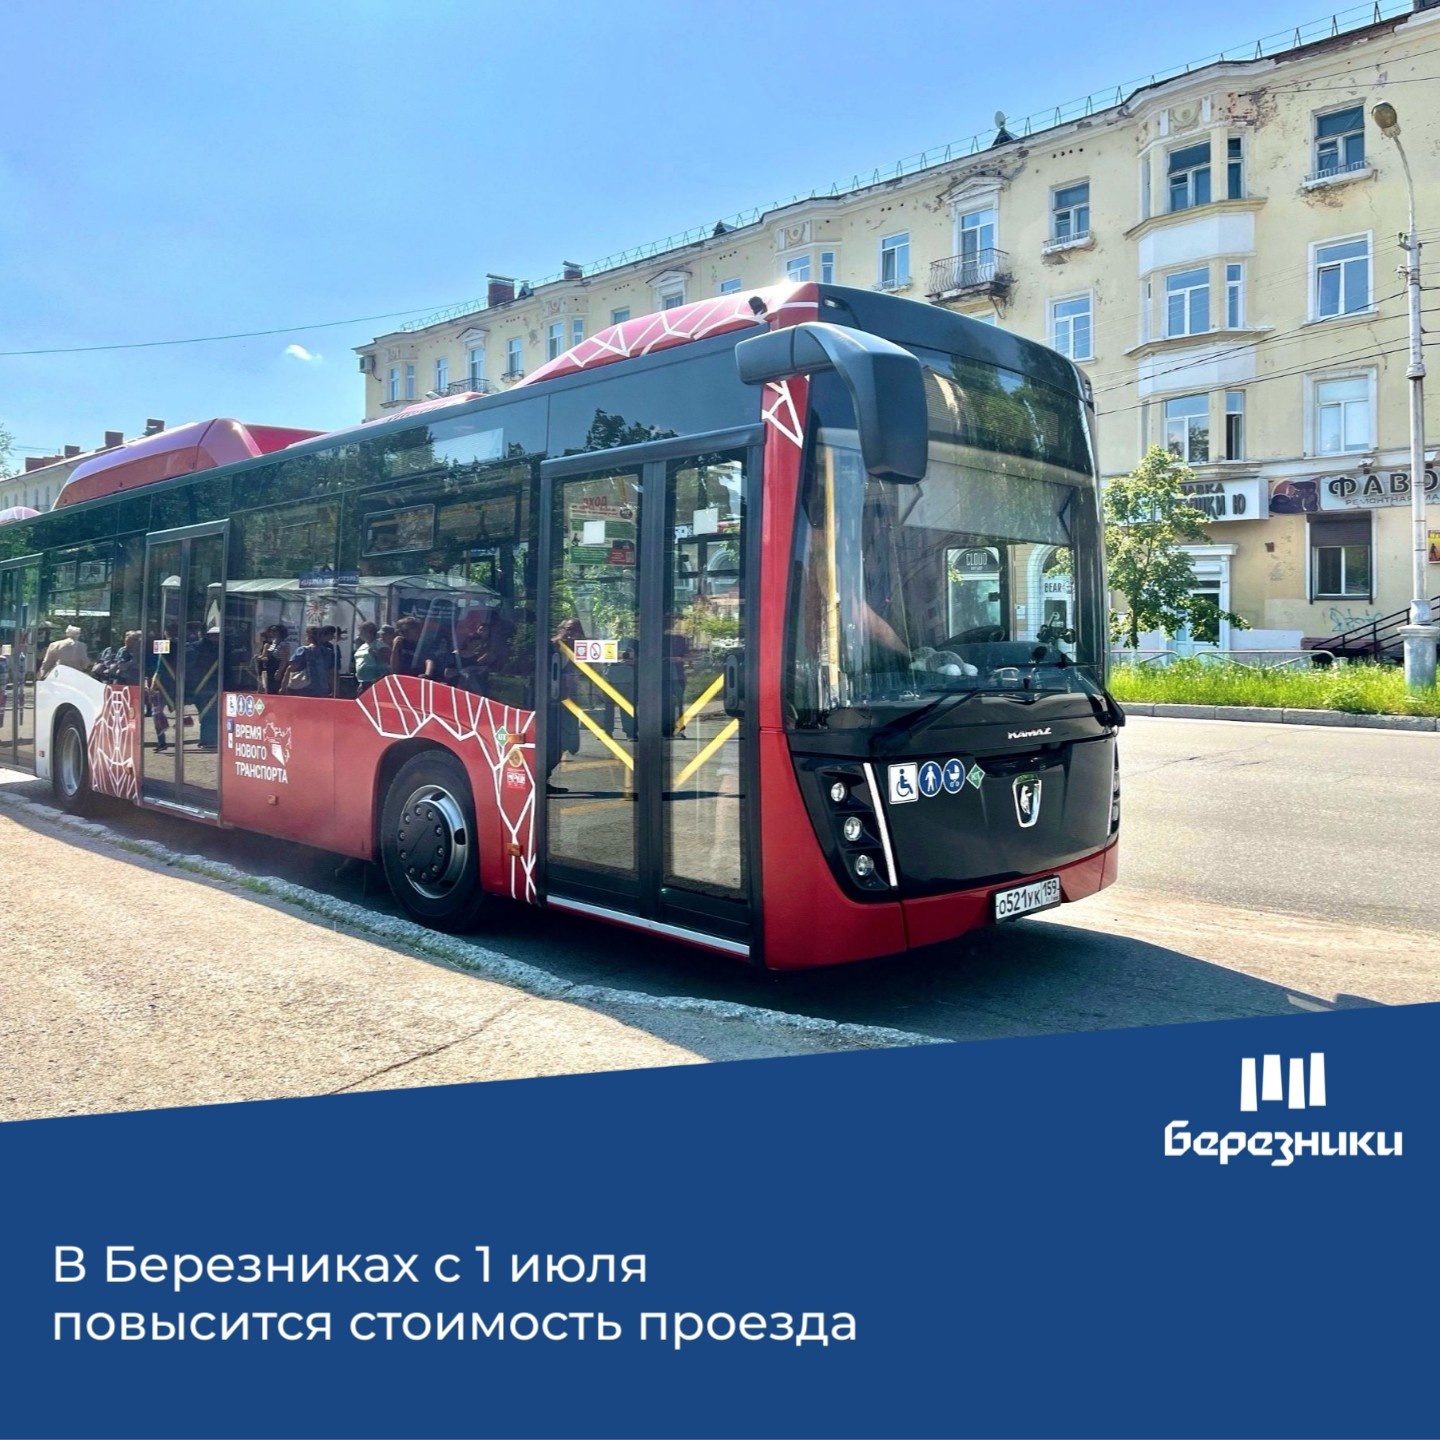 Стоимость проезда в общественном транспорте Березников с 1 июля составит 35 рублей